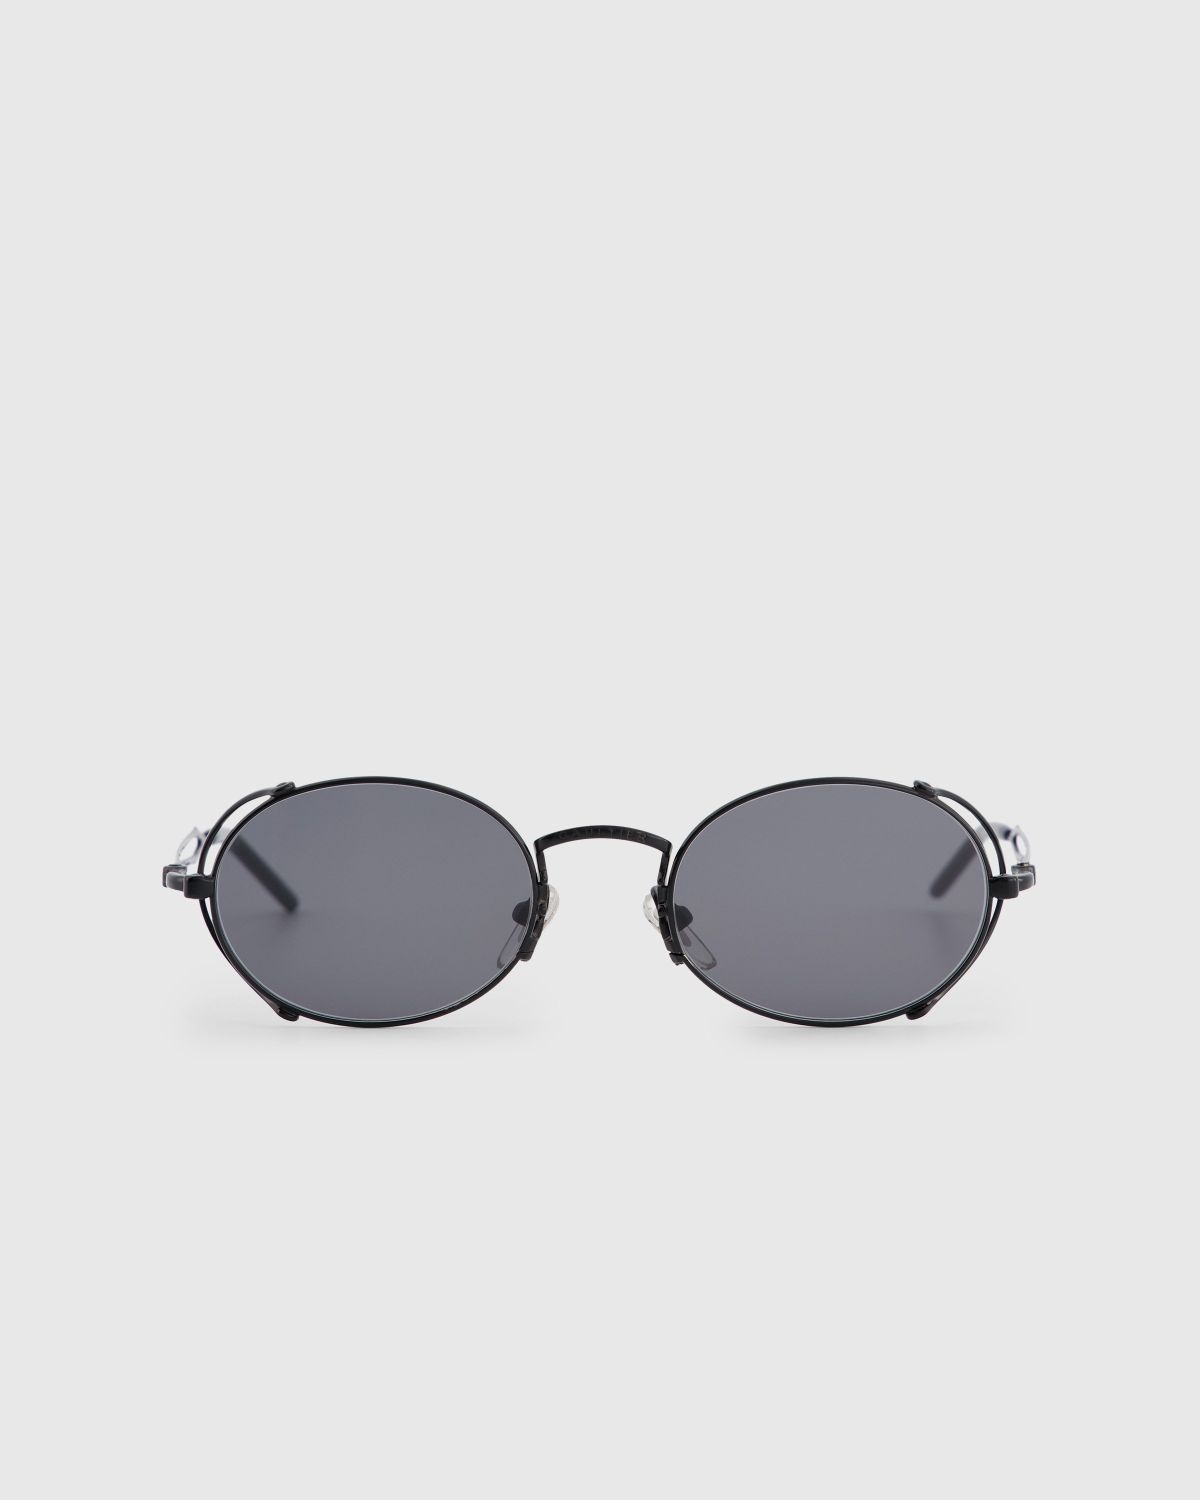 Jean Paul Gaultier x Burna Boy – 55-3175 Arceau Sunglasses Black - 1